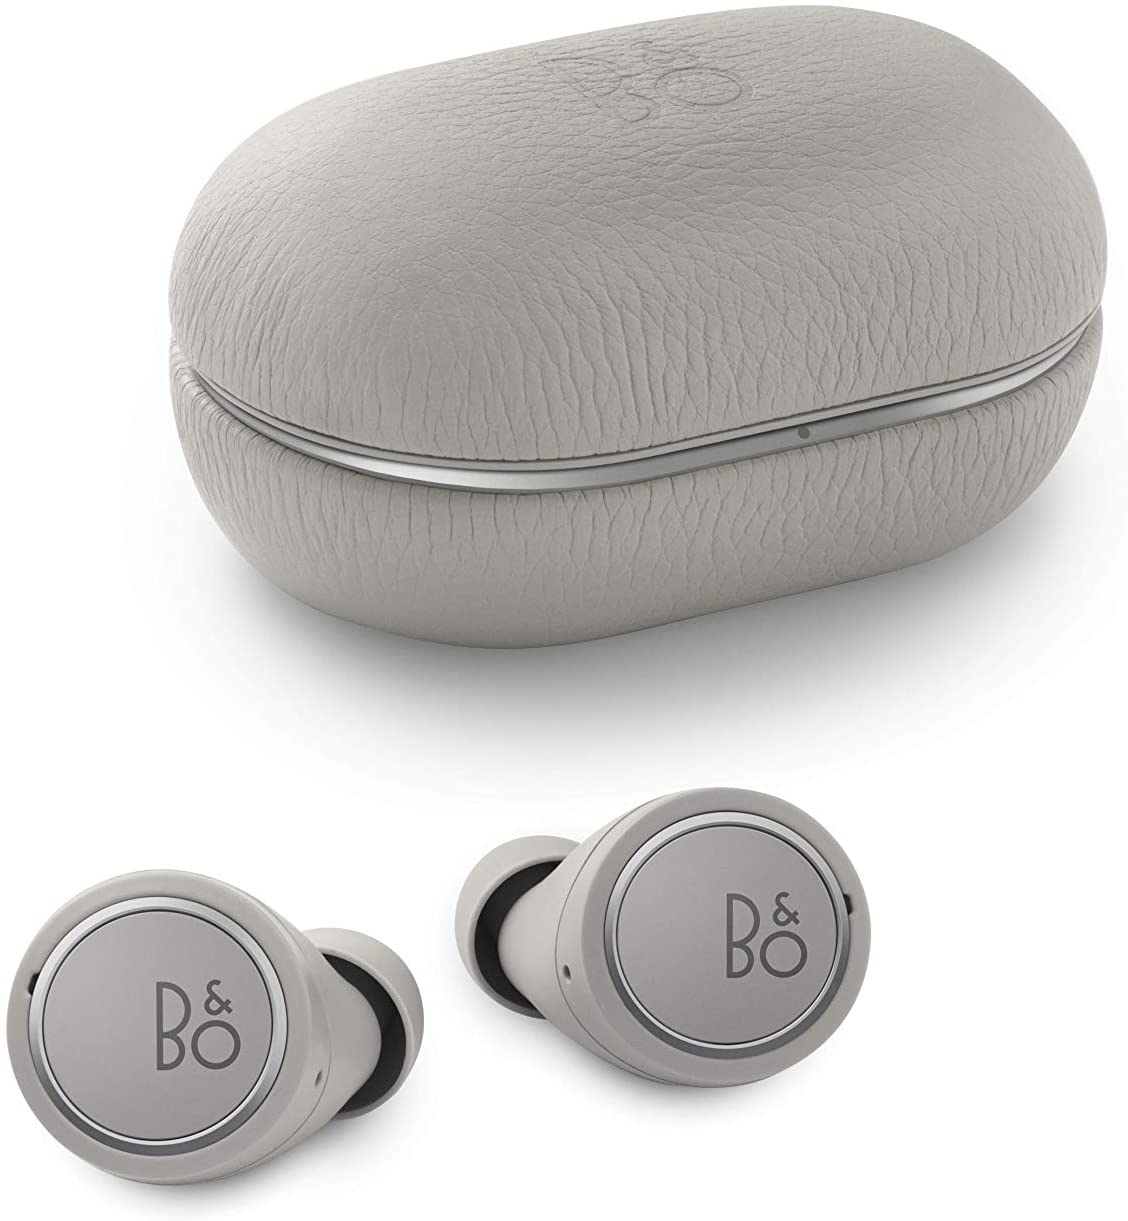 Bang ＆ Olufsen、完全ワイヤレスイヤホン｢Beoplay E8 (第3世代)｣の新カラーモデル｢Grey Mist｣を3月19日に発売へ